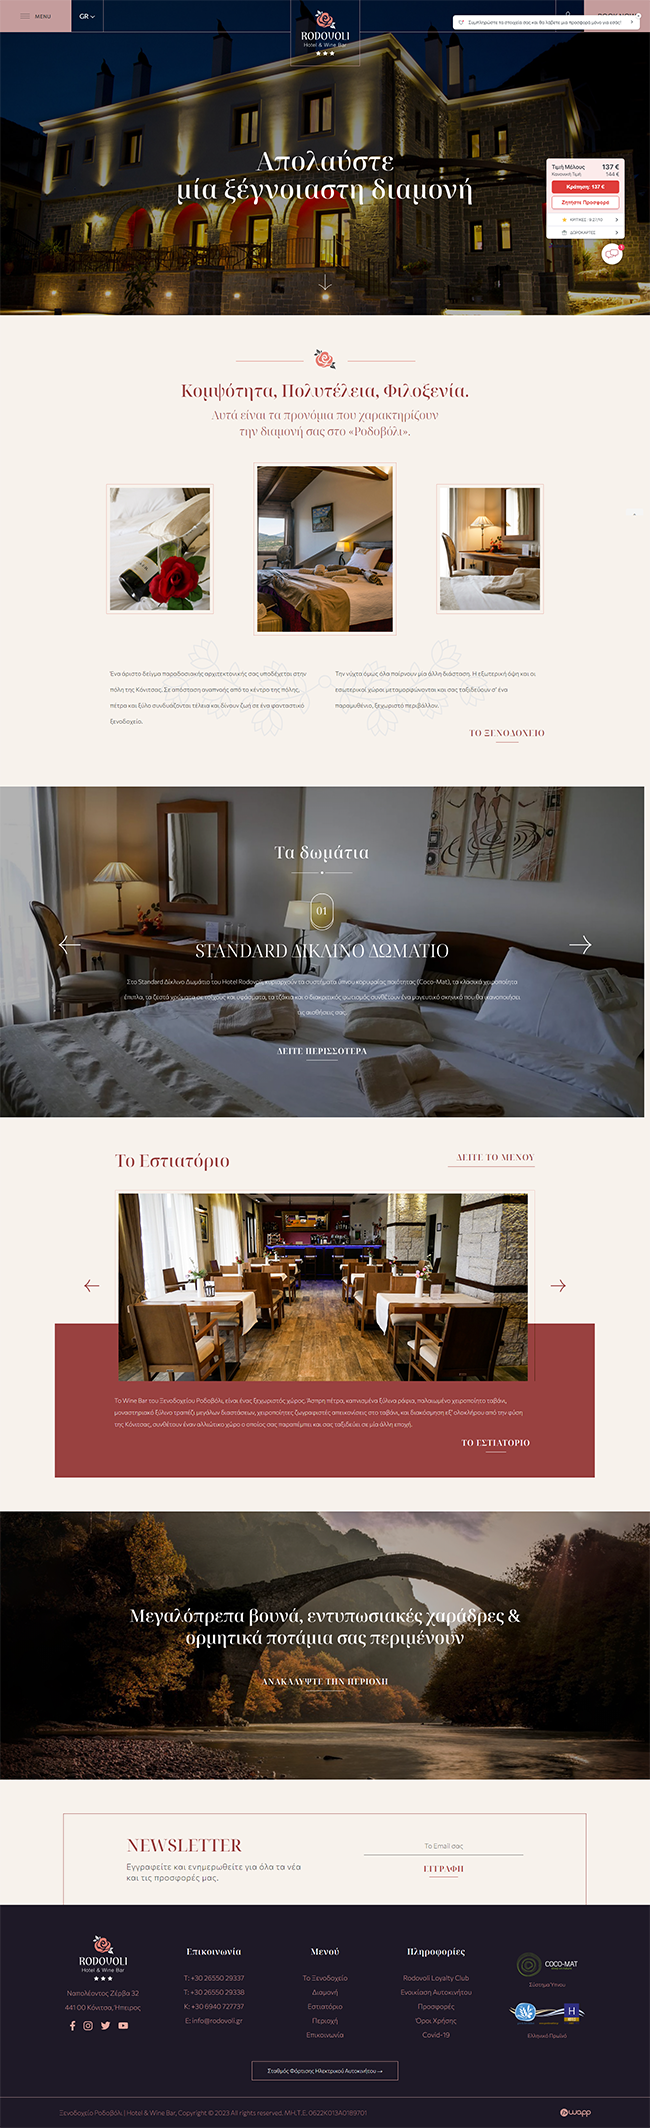 Κατασκευή ιστοσελίδας για τo ξενοδοχείο Ροδοβόλι Hotel & Wine Bar στην Κόνιτσα, Ιωάννινα